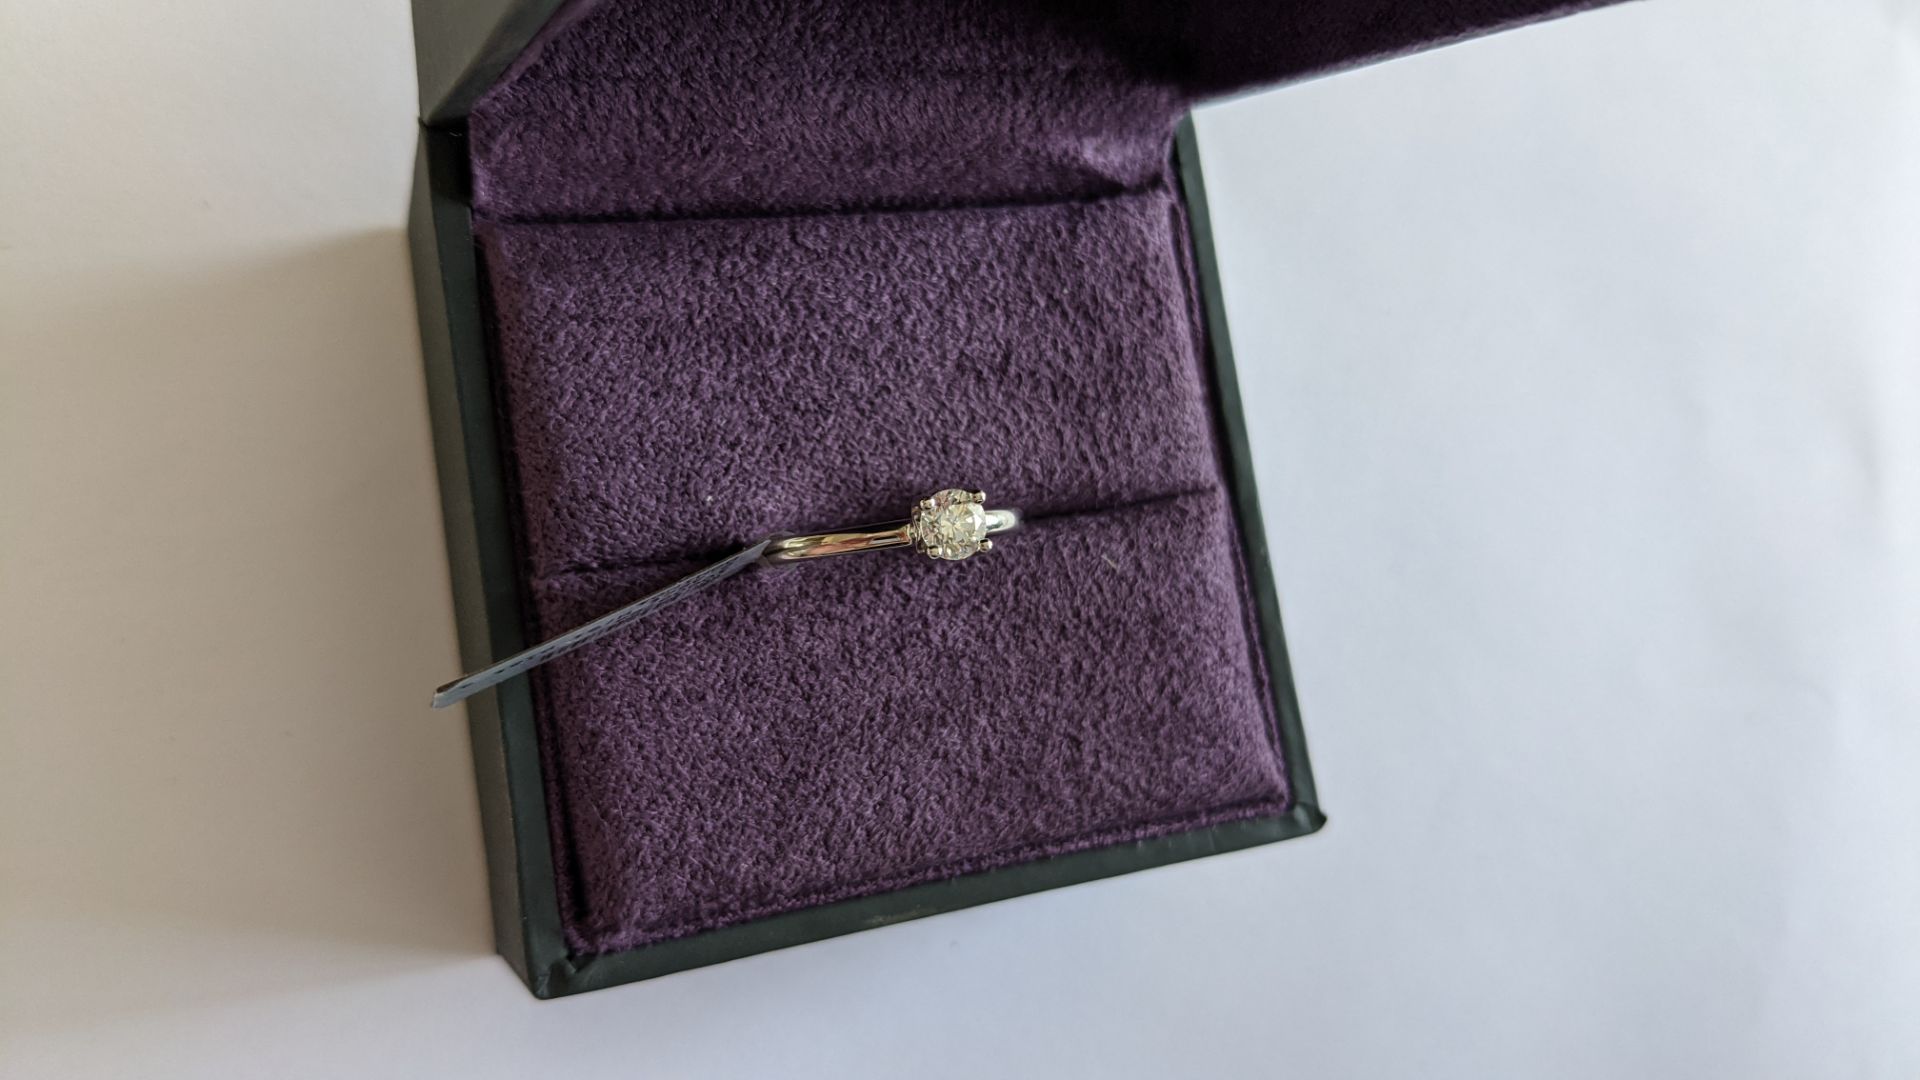 Single stone diamond & platinum 950 ring with 0.35ct H/Si diamond, RRP £1,507 - Image 8 of 29